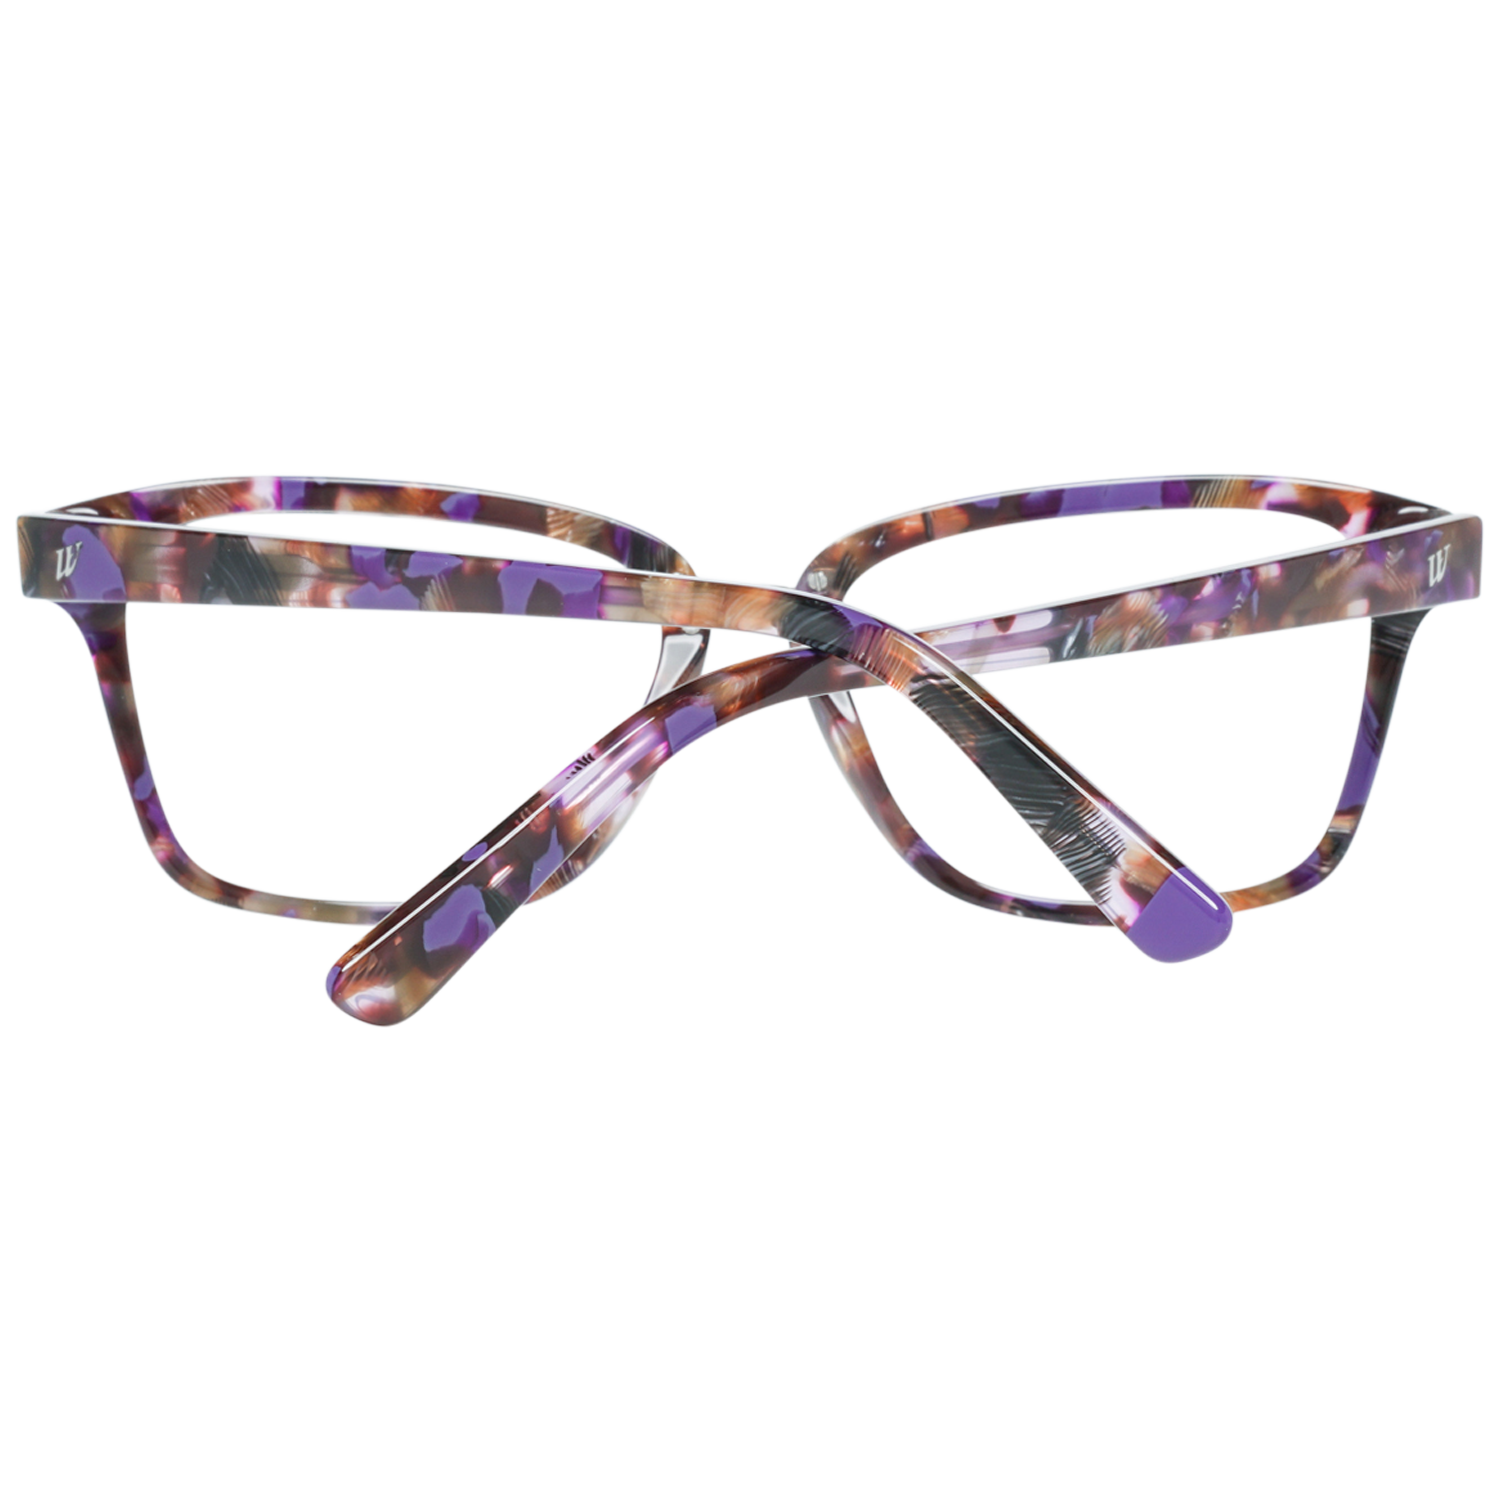 Web Frames Web Glasses Optical Frame WE5229 081 53 Eyeglasses Eyewear UK USA Australia 